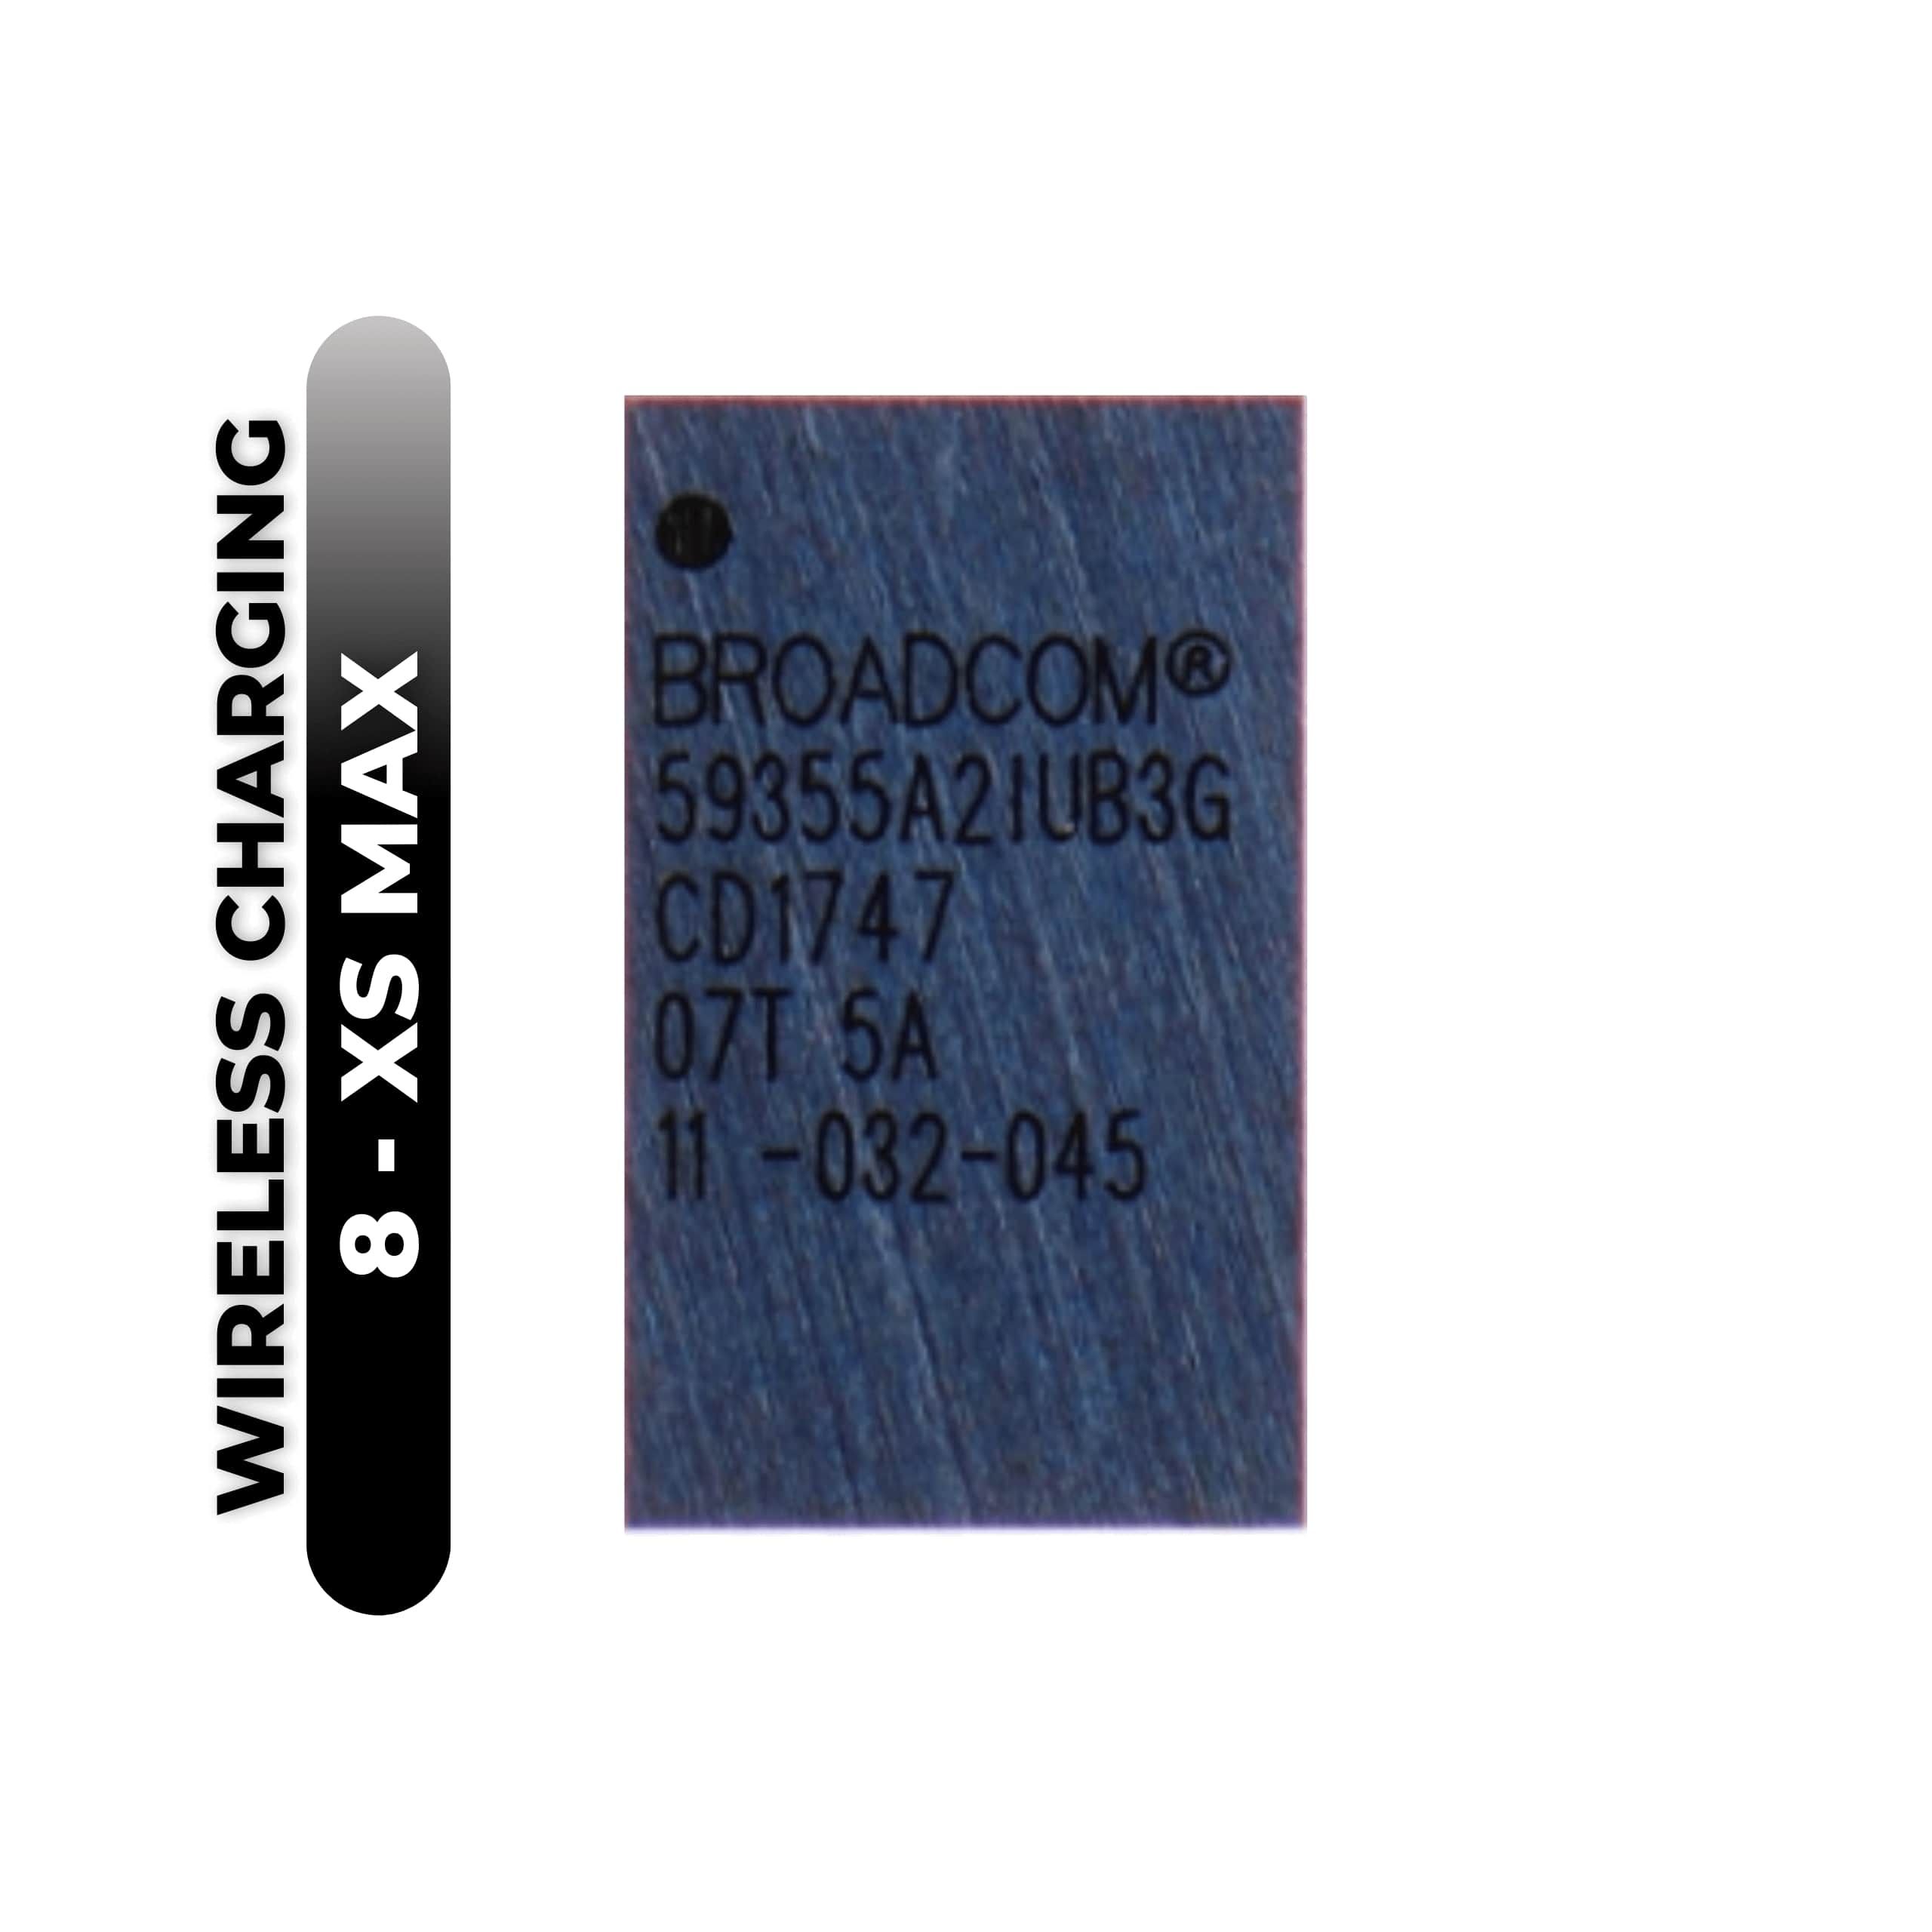 Wireless Charging IC for iPhone 8 / 8 Plus / X / XR / XS / Xs Max (U3400) (59355A2IUB3G)